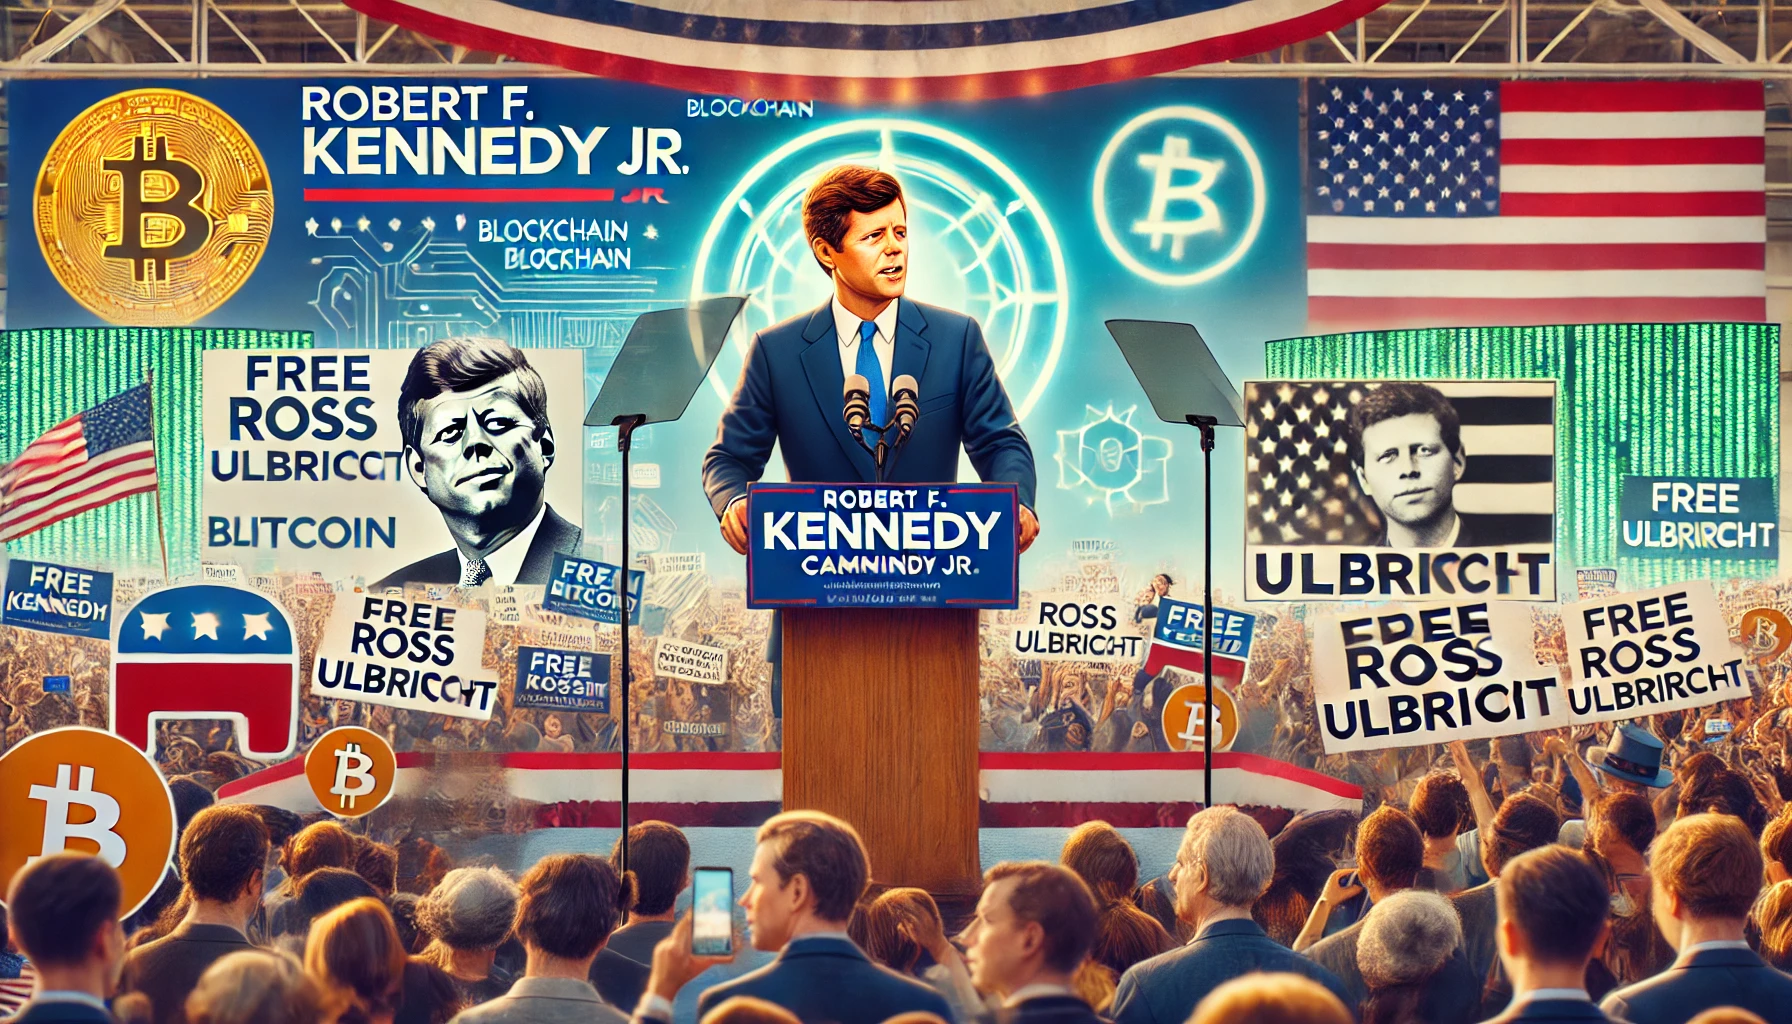 Robert F. Kennedy Jr. belooft gratie voor Ross Ulbricht als hij wordt verkozen